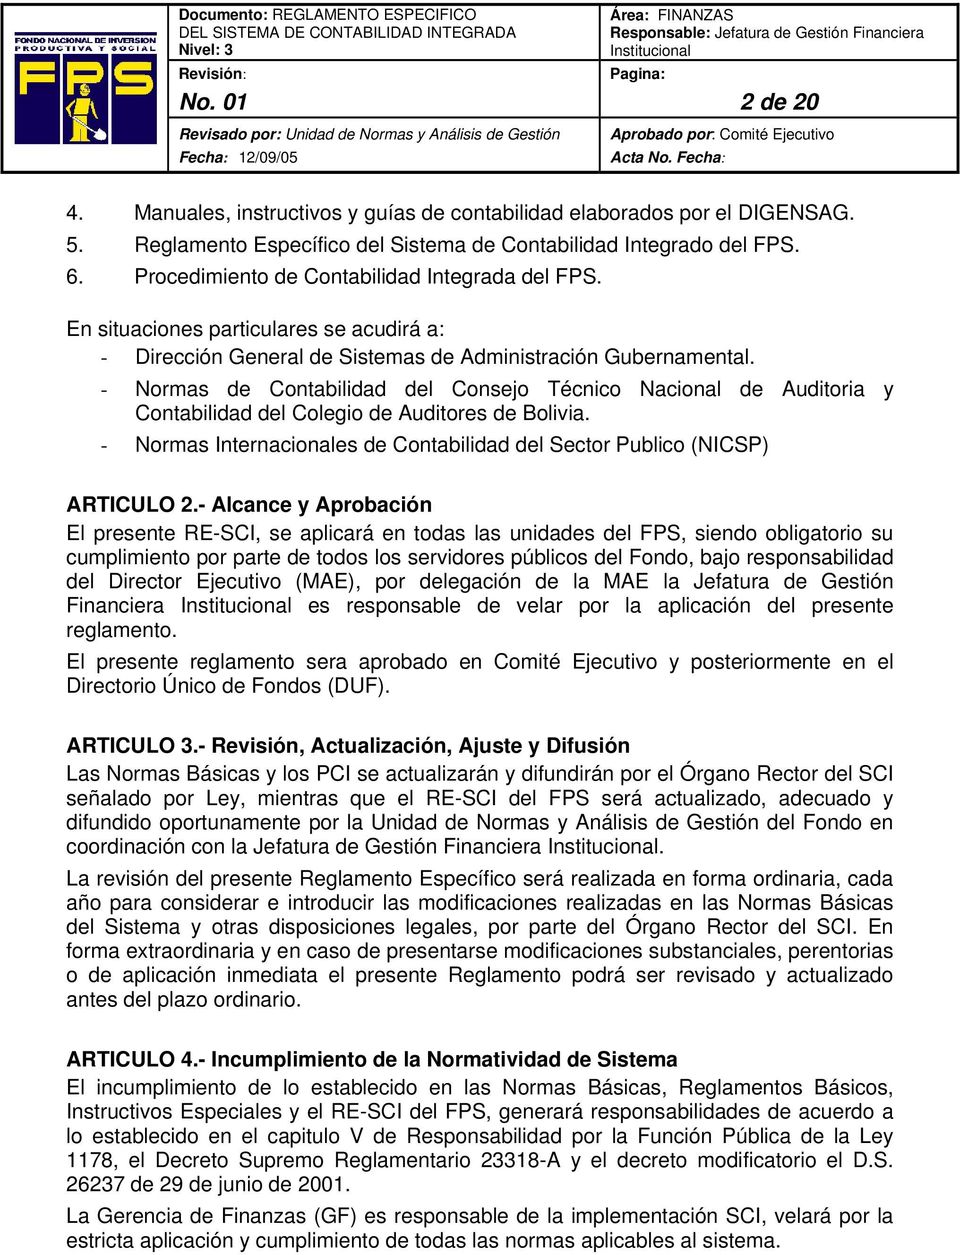 - Normas de Contabilidad del Consejo Técnico Nacional de Auditoria y Contabilidad del Colegio de Auditores de Bolivia. - Normas Internacionales de Contabilidad del Sector Publico (NICSP) ARTICULO 2.